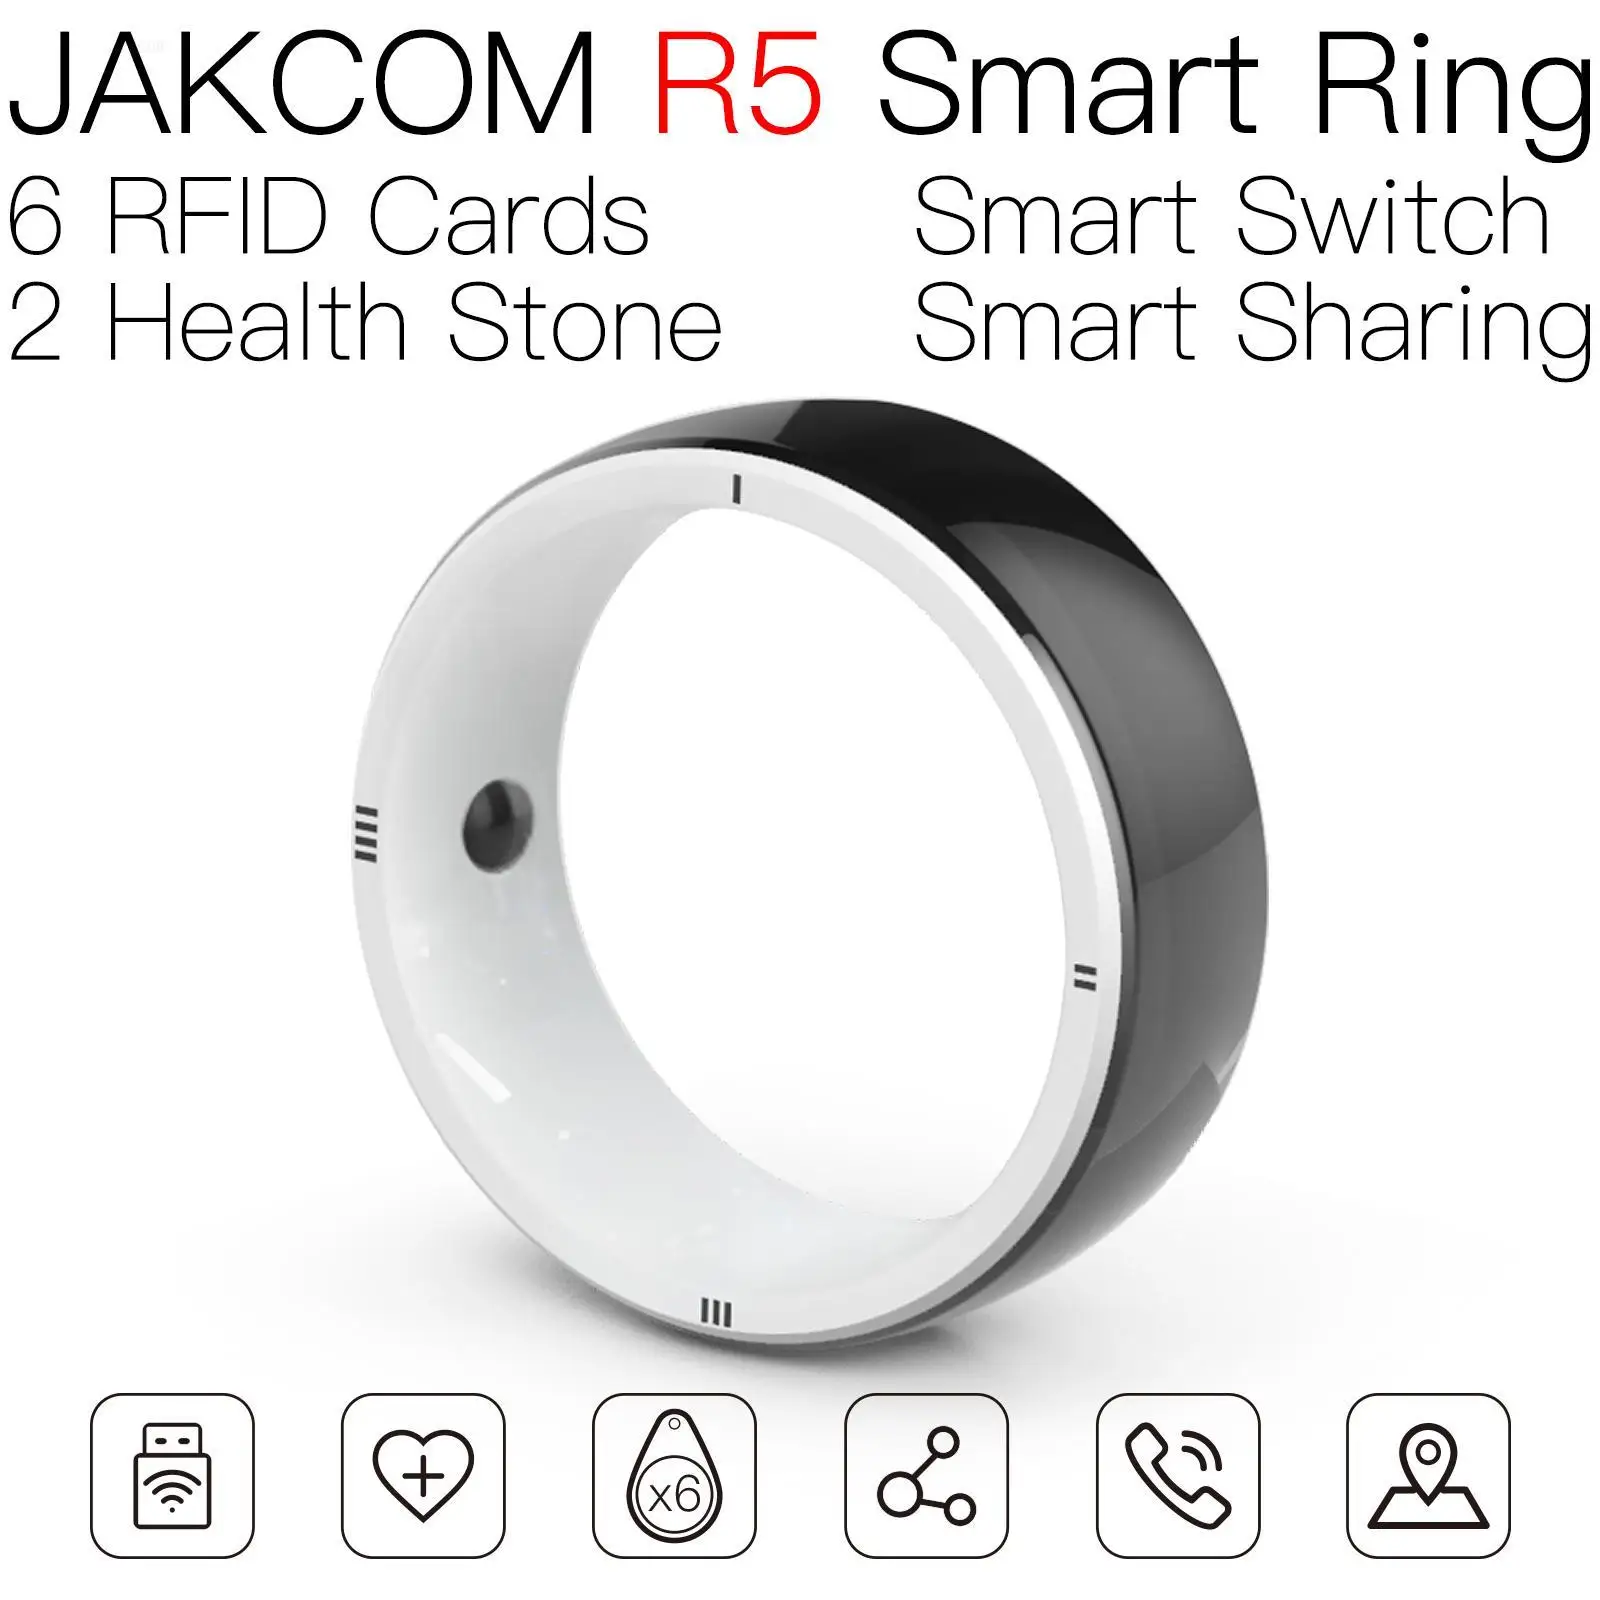 JAKCOM R5 Smart Ring Соответствует rfid-метке uhf long range one chip psx read clone перезаписываемый браслет nfc для ногтей двойной